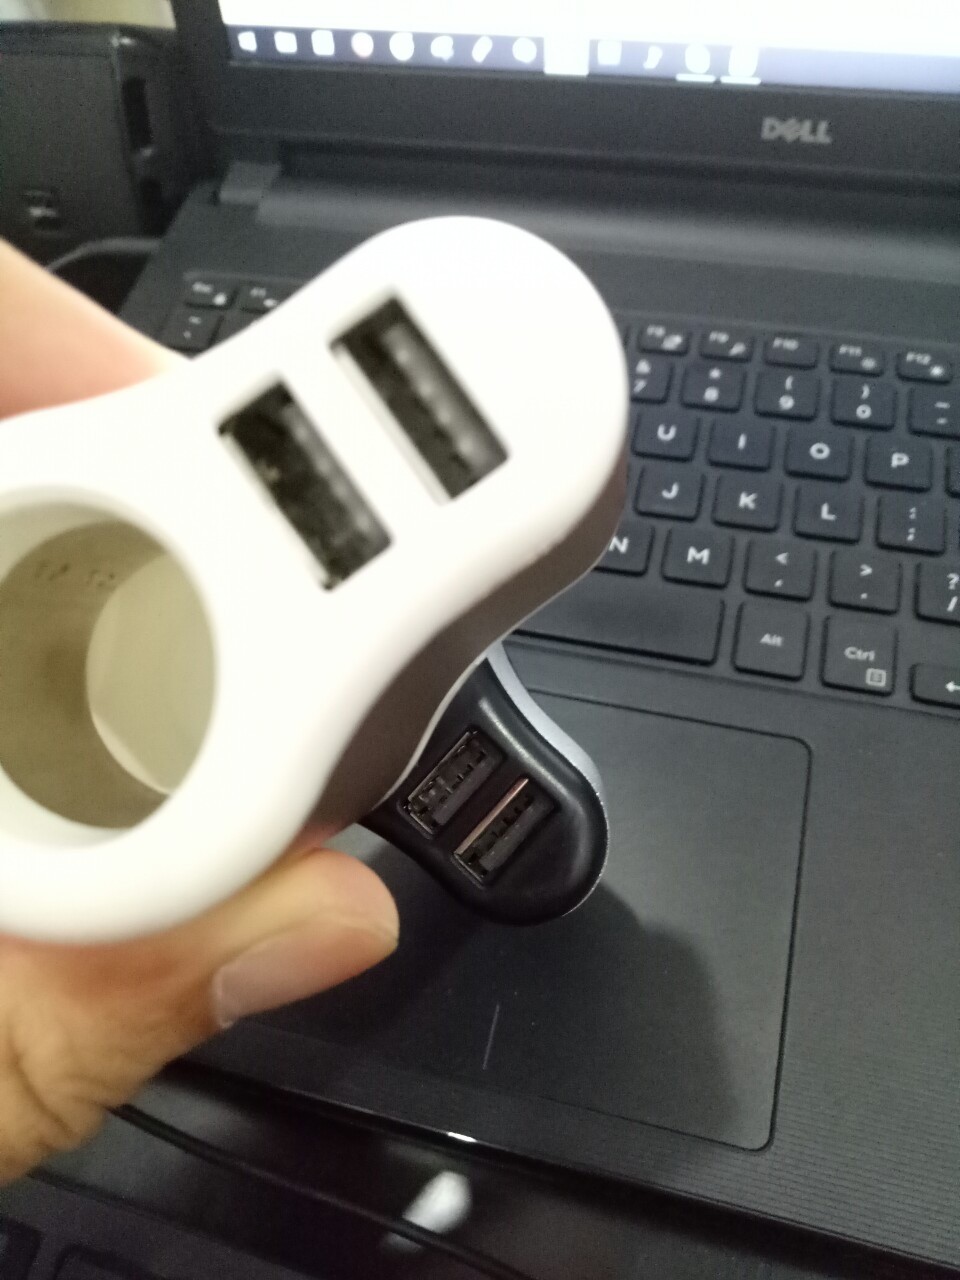 Có 2 cổng USB sử dụng tương ứng cho 2 sản phẩm cùng lúc.